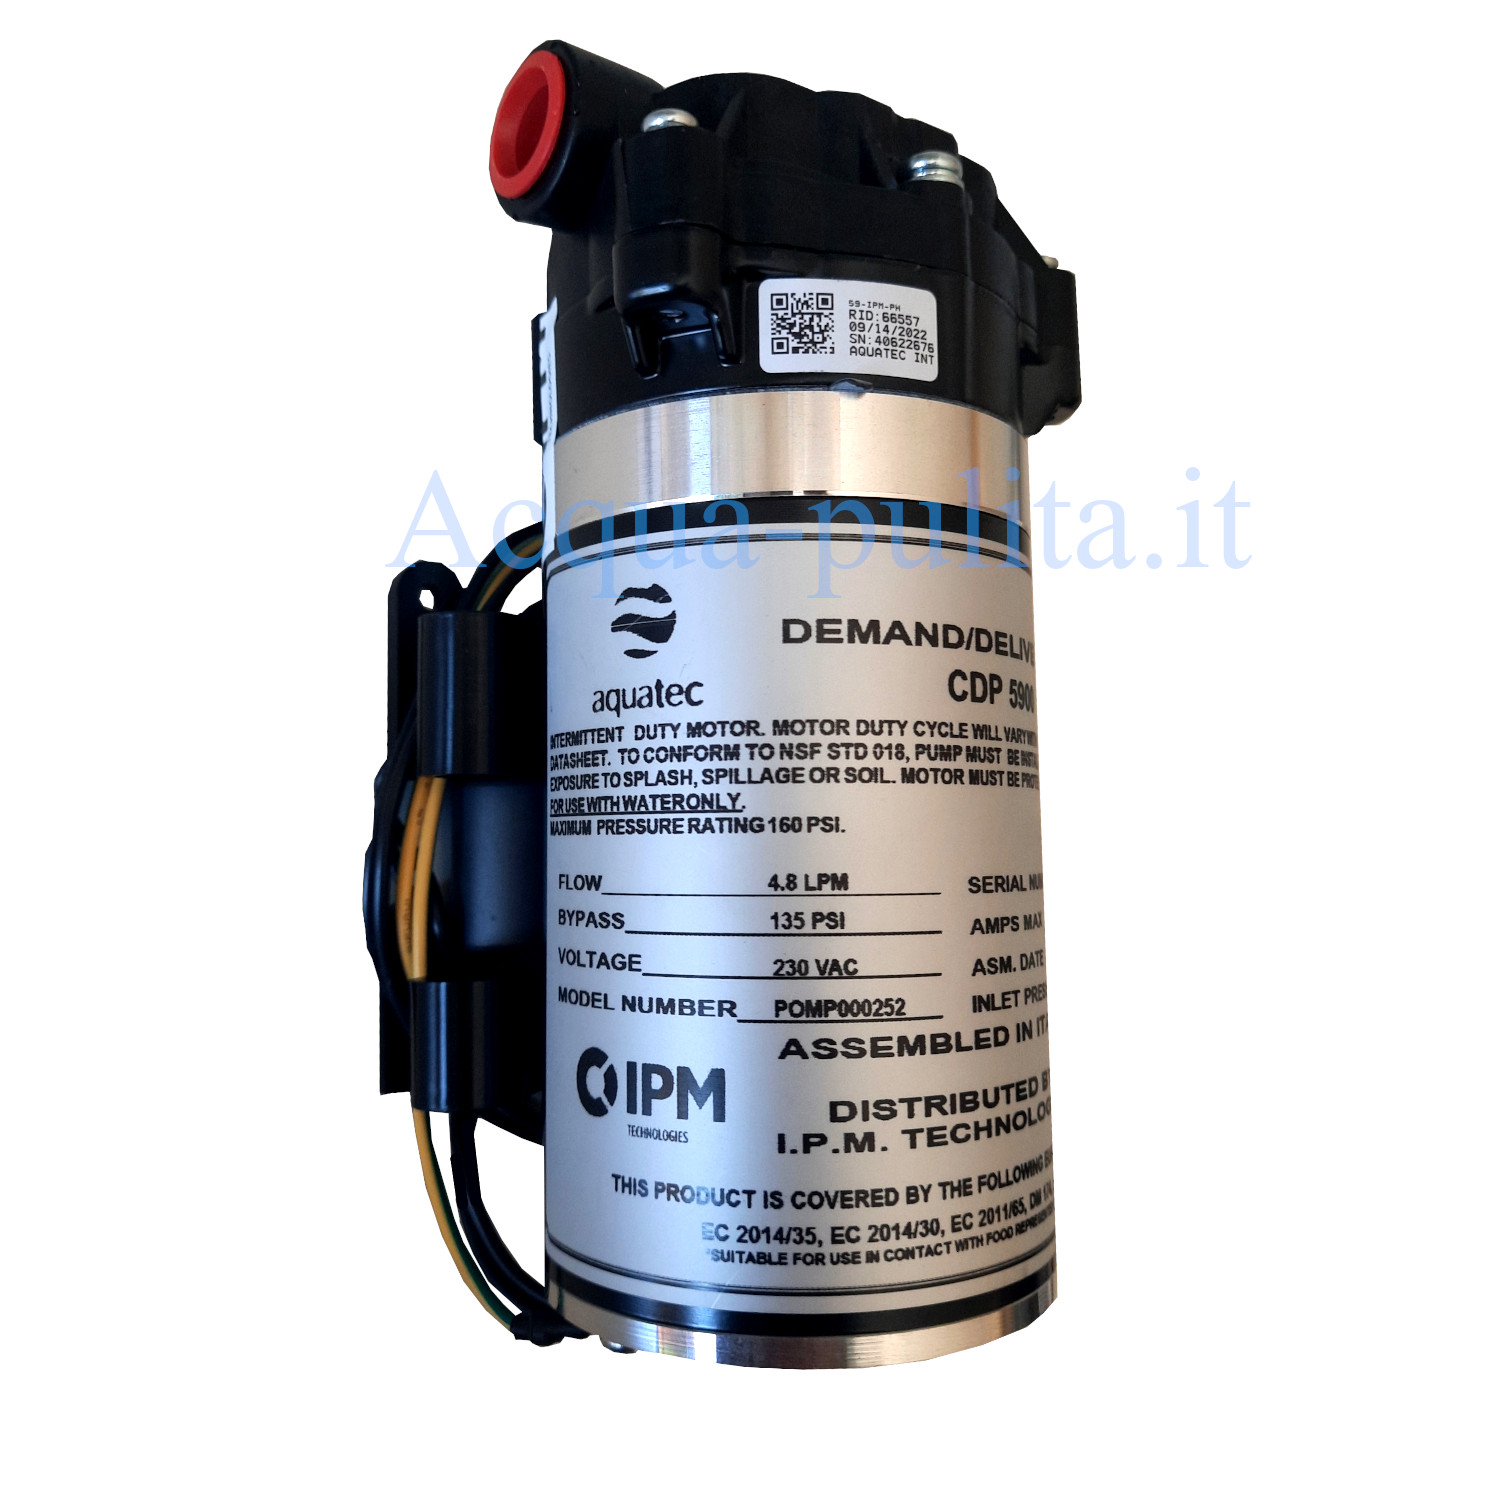 Pompa booster 220v aquatec 5900 - Flusso in operazione: 4.8 LPM - 288 litri/ora